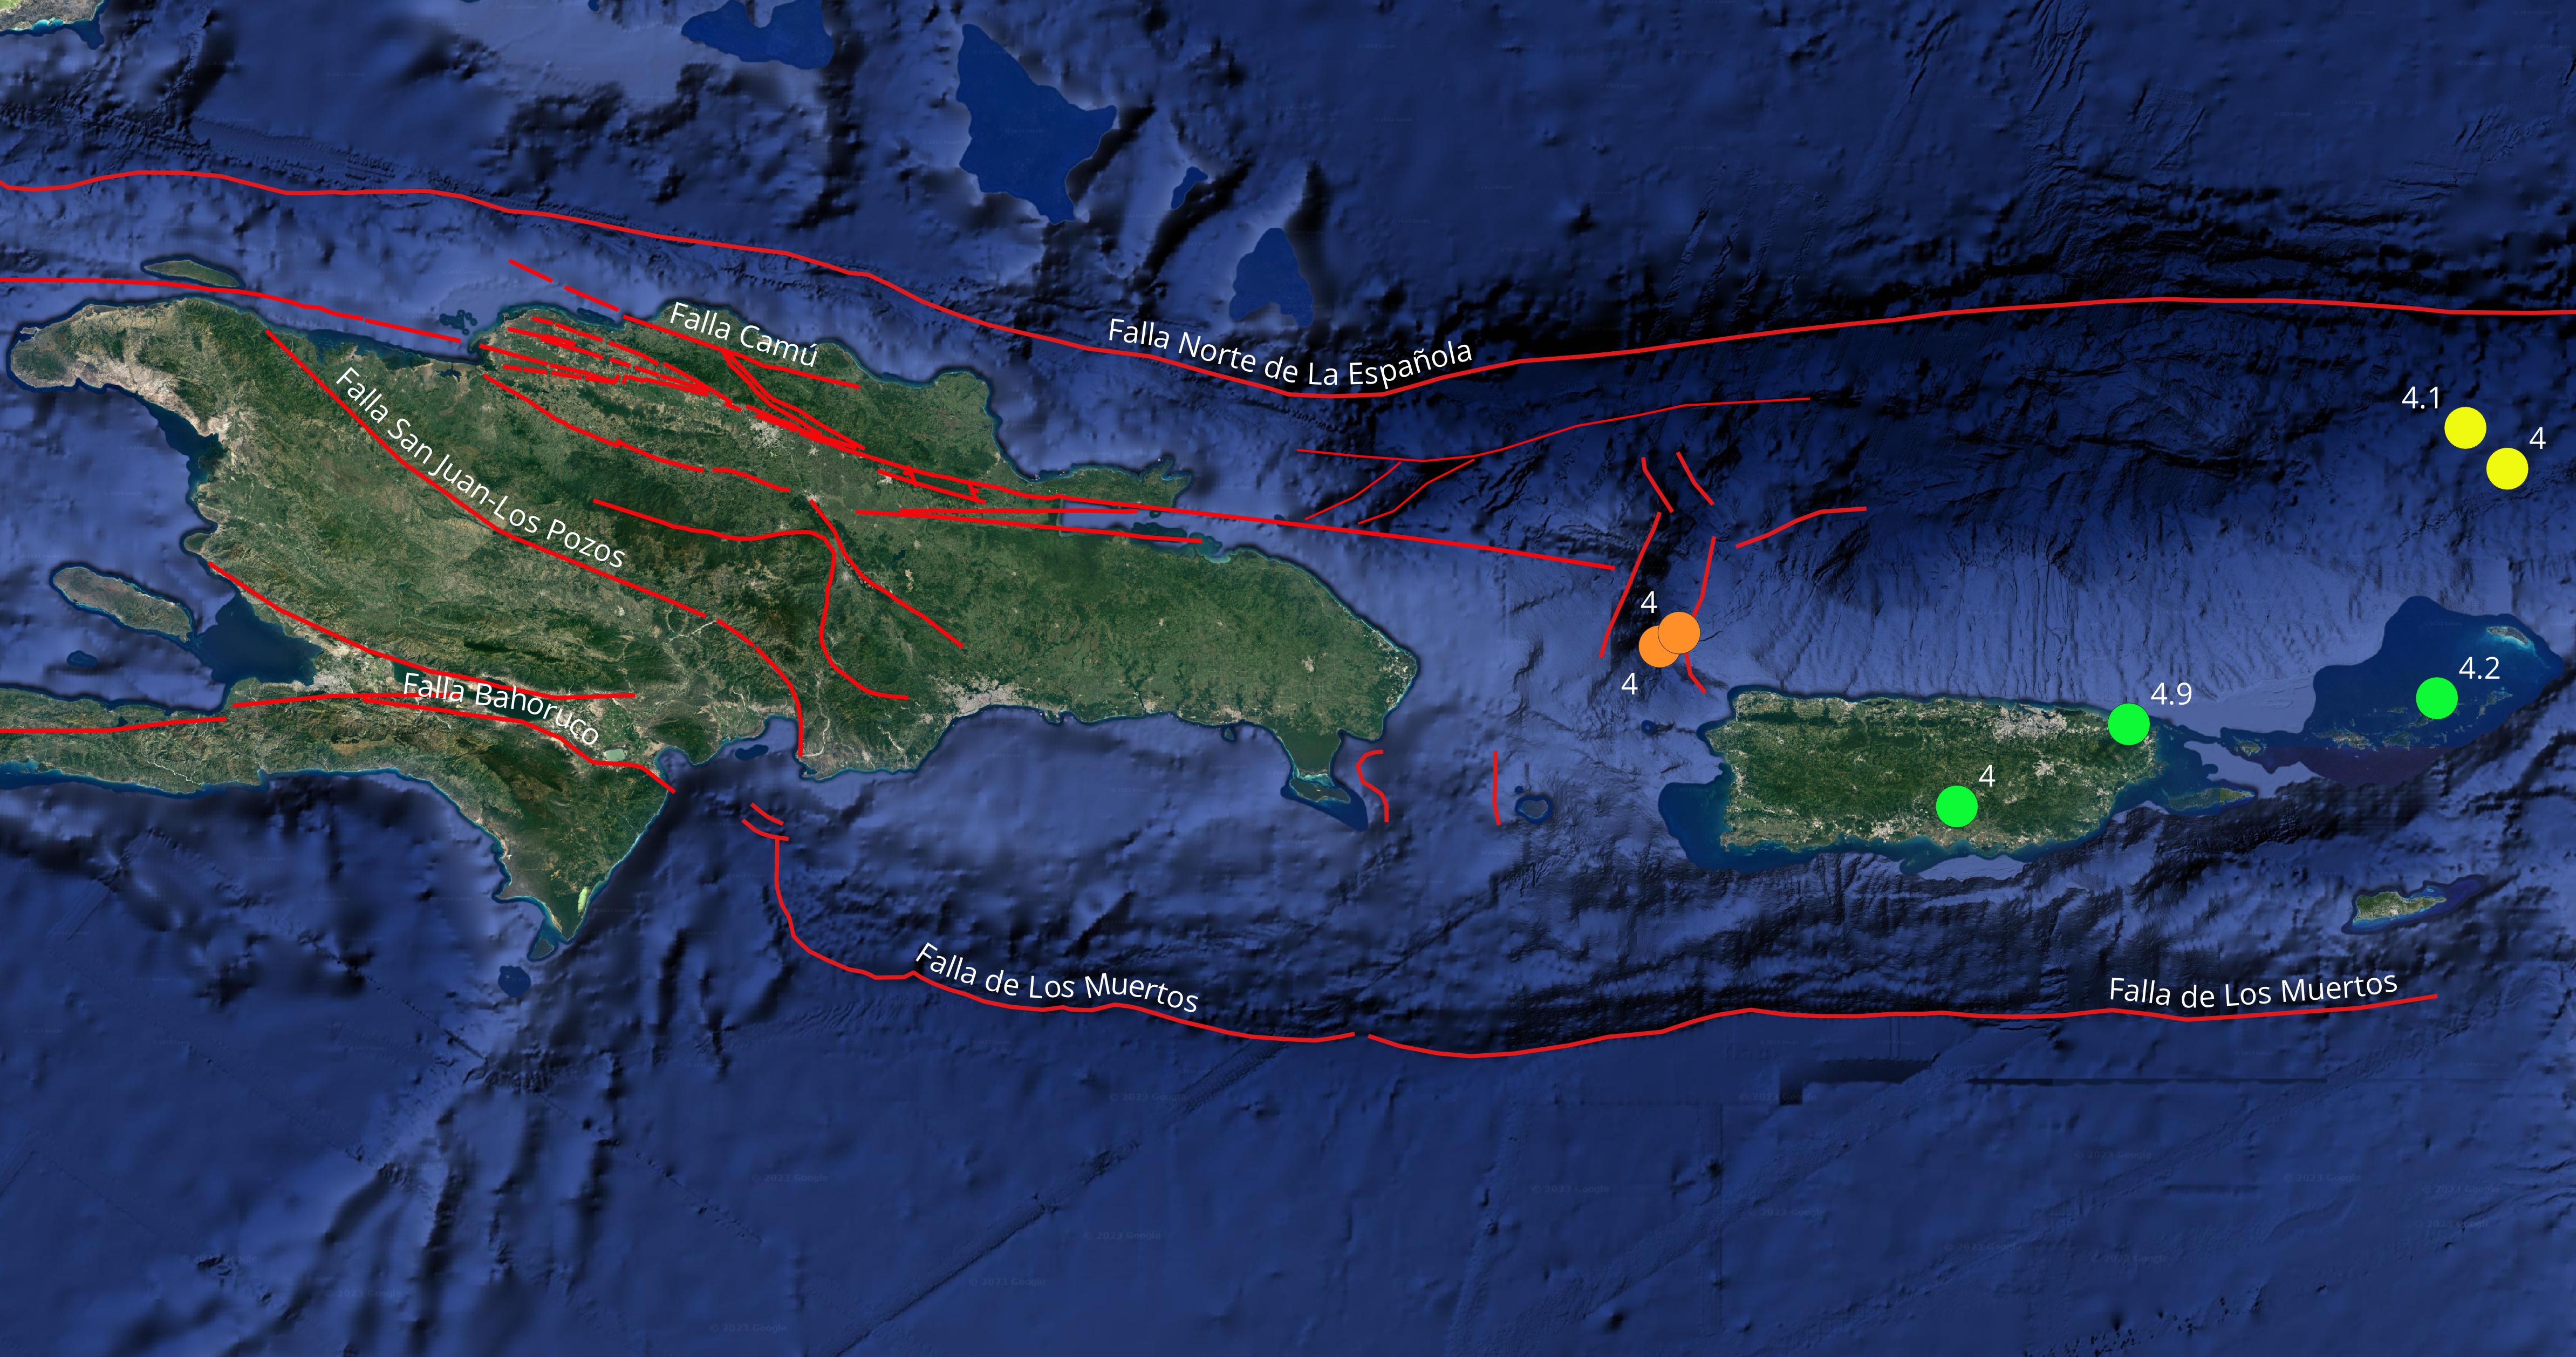 Imagen N° 2 mostrando los 7 eventos sísmicos con magnitudes similares o mayores que 4.0 del pasado mes de marzo